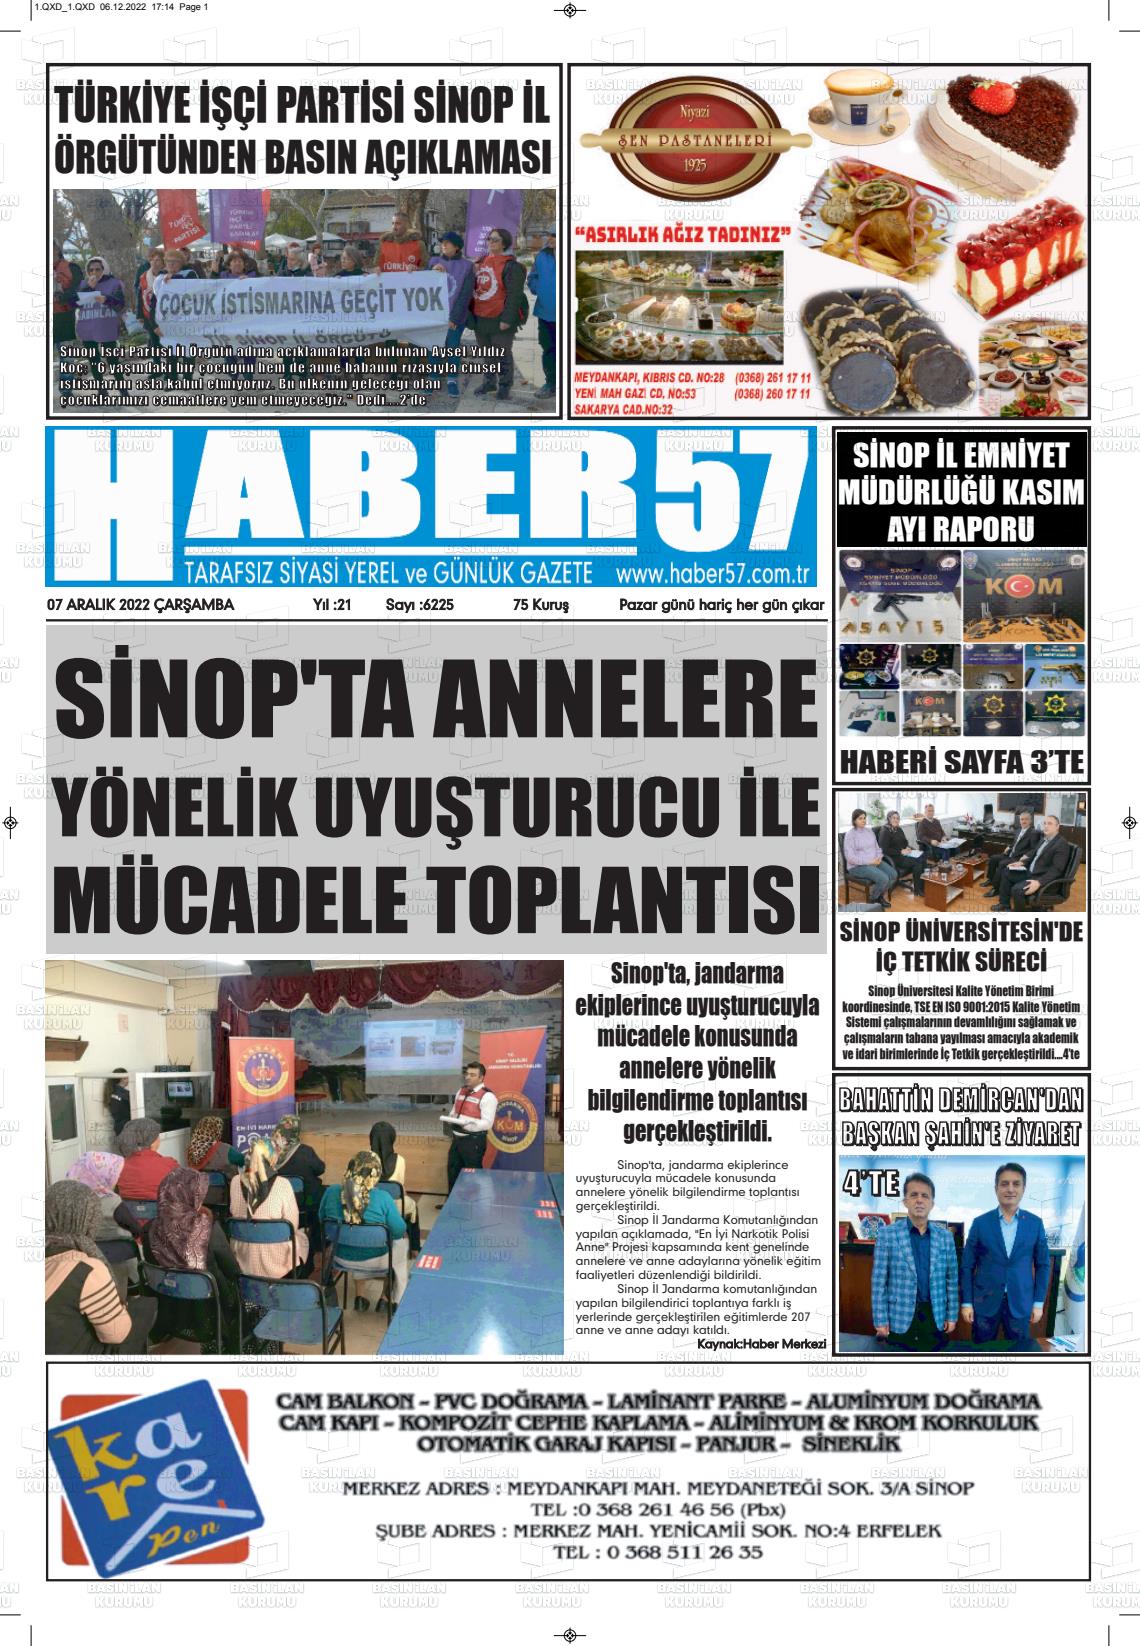 07 Aralık 2022 Haber 57 Gazete Manşeti